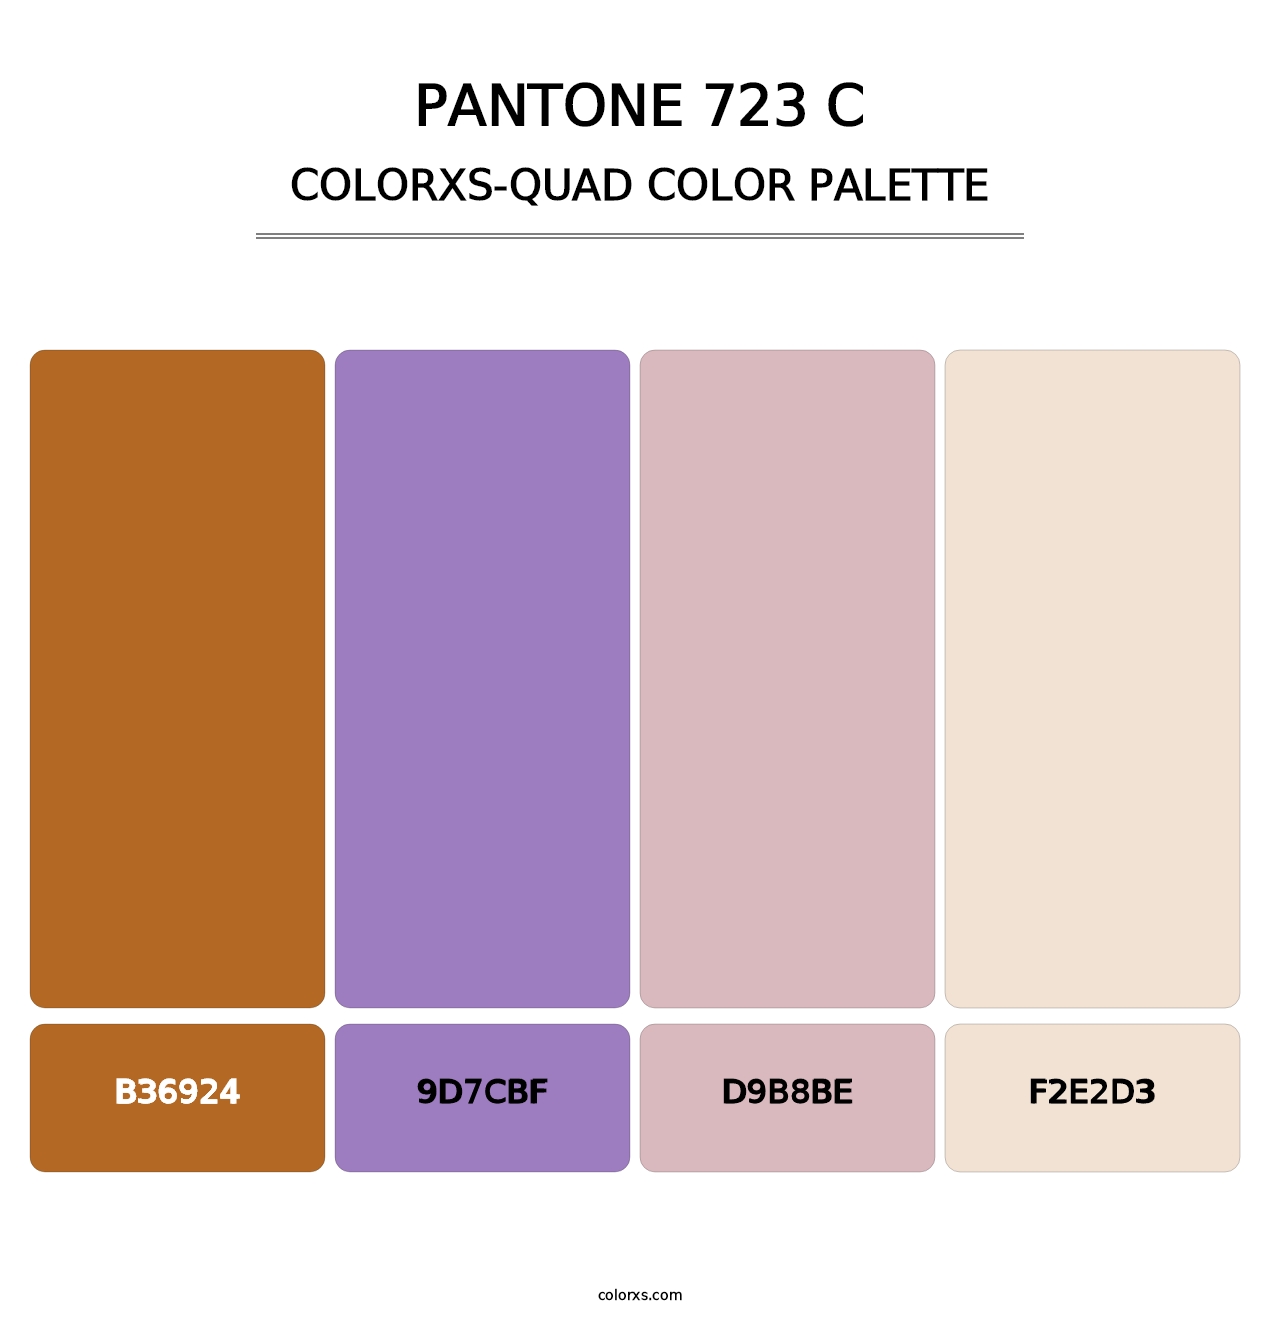 PANTONE 723 C - Colorxs Quad Palette